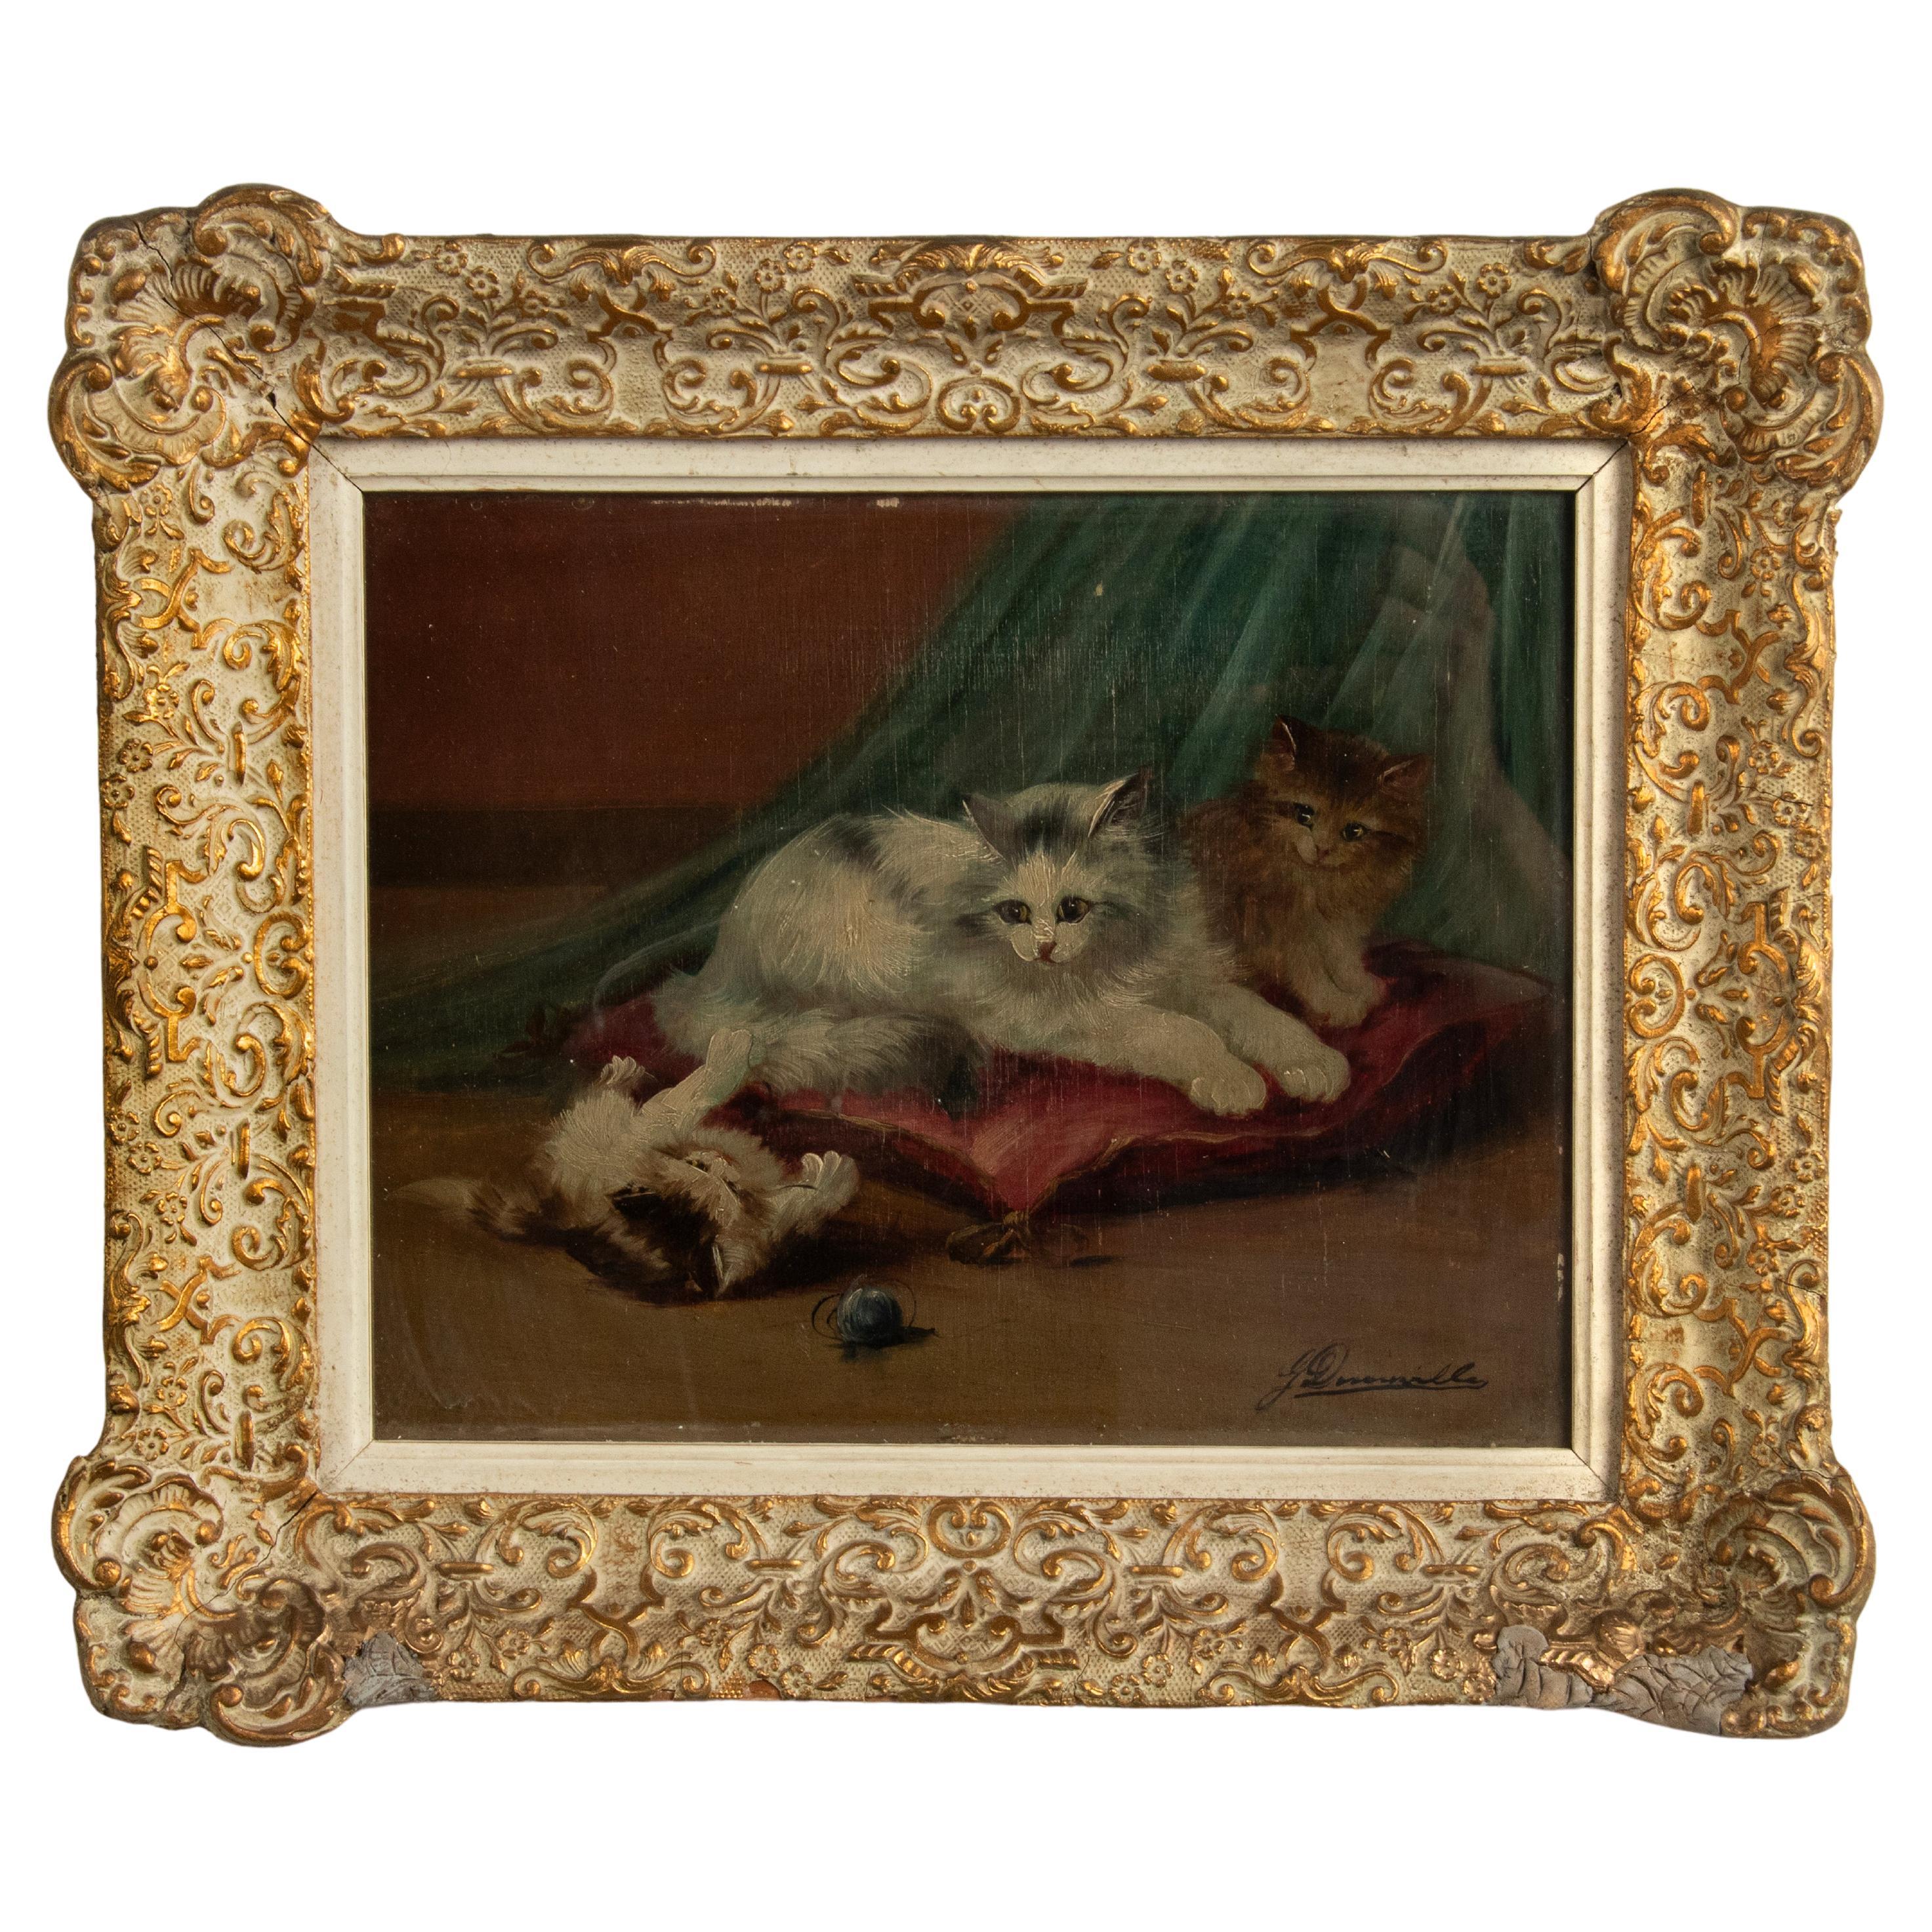 Peinture à l'huile du début du 20e siècle représentant des chats en train de jouer